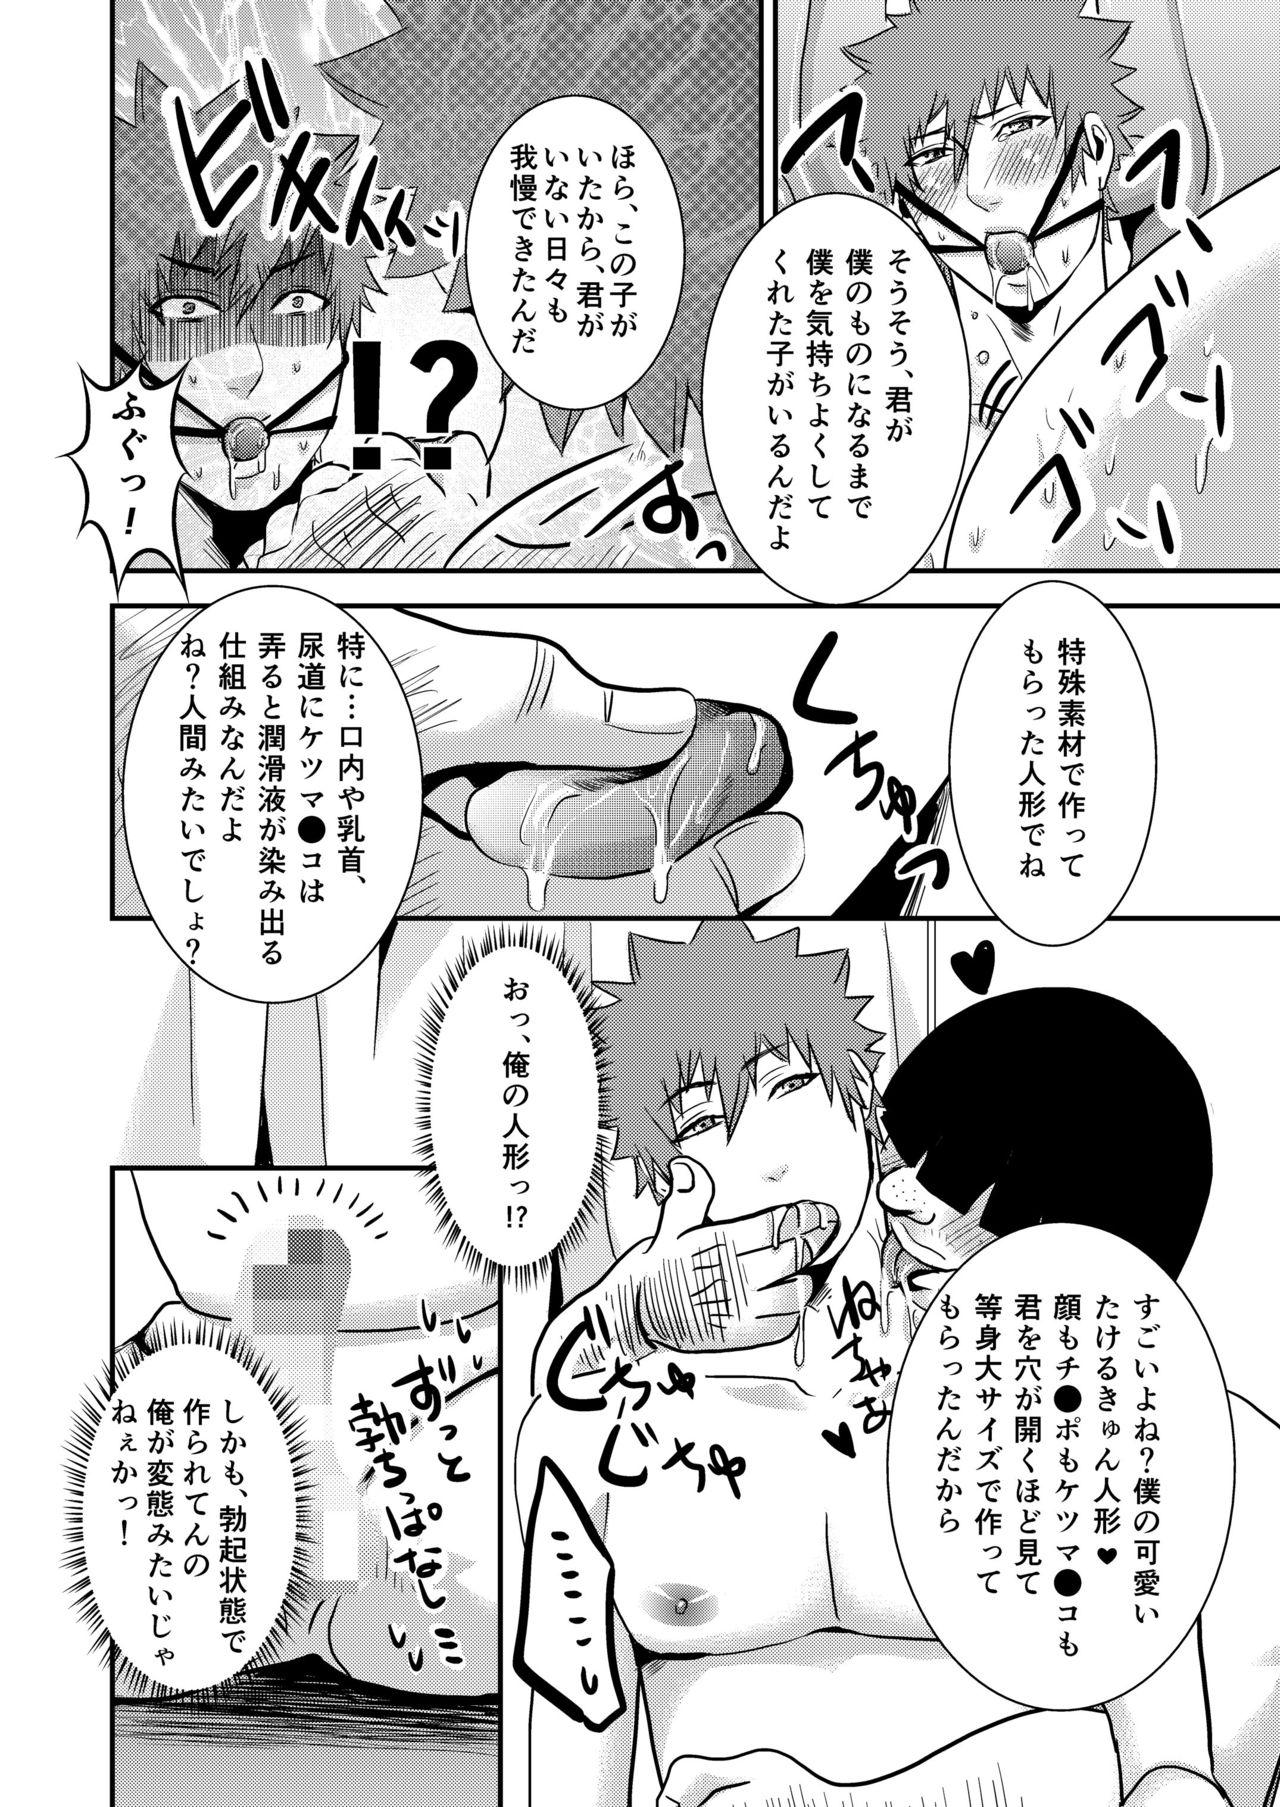 Man Takeruki Yuntsu, Ojisan to haahaa Shiyo? Morrita - Page 8